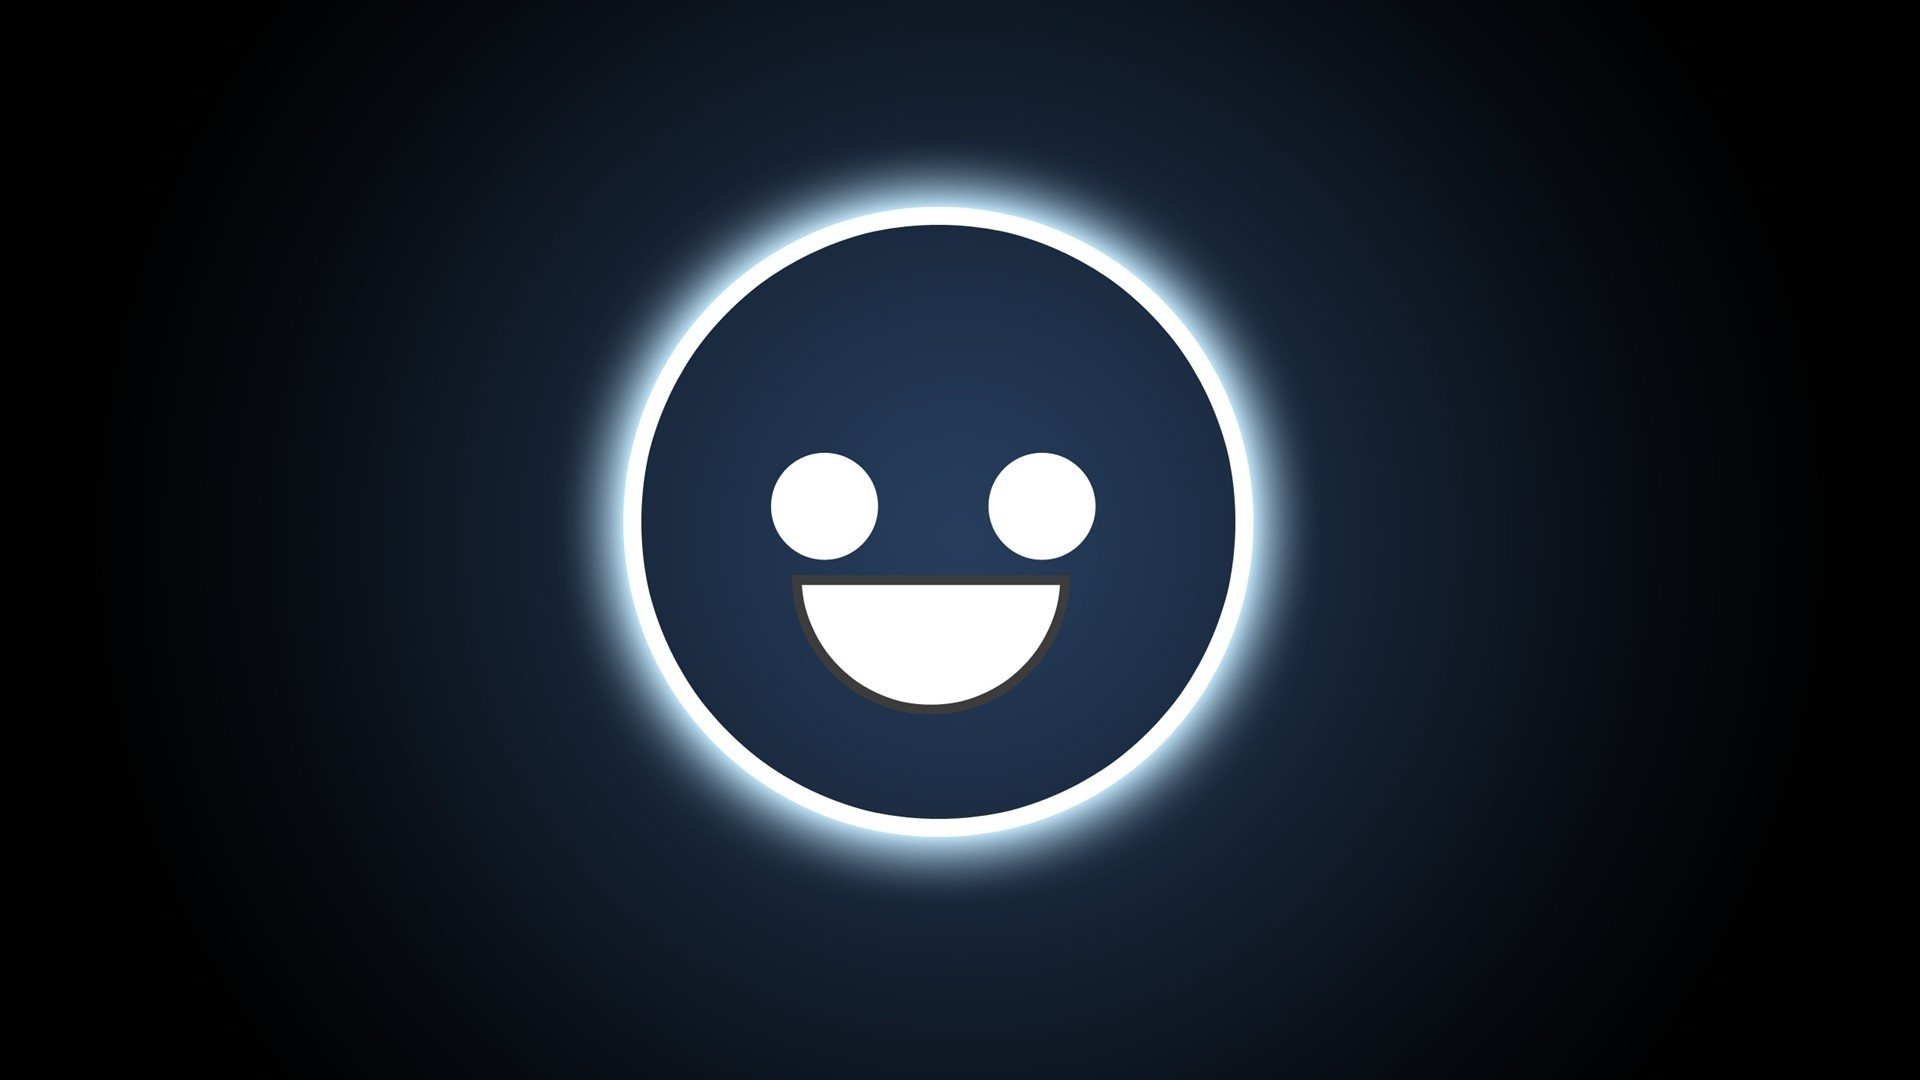 smiley face wallpaper hd,light,smile,sky,icon,logo